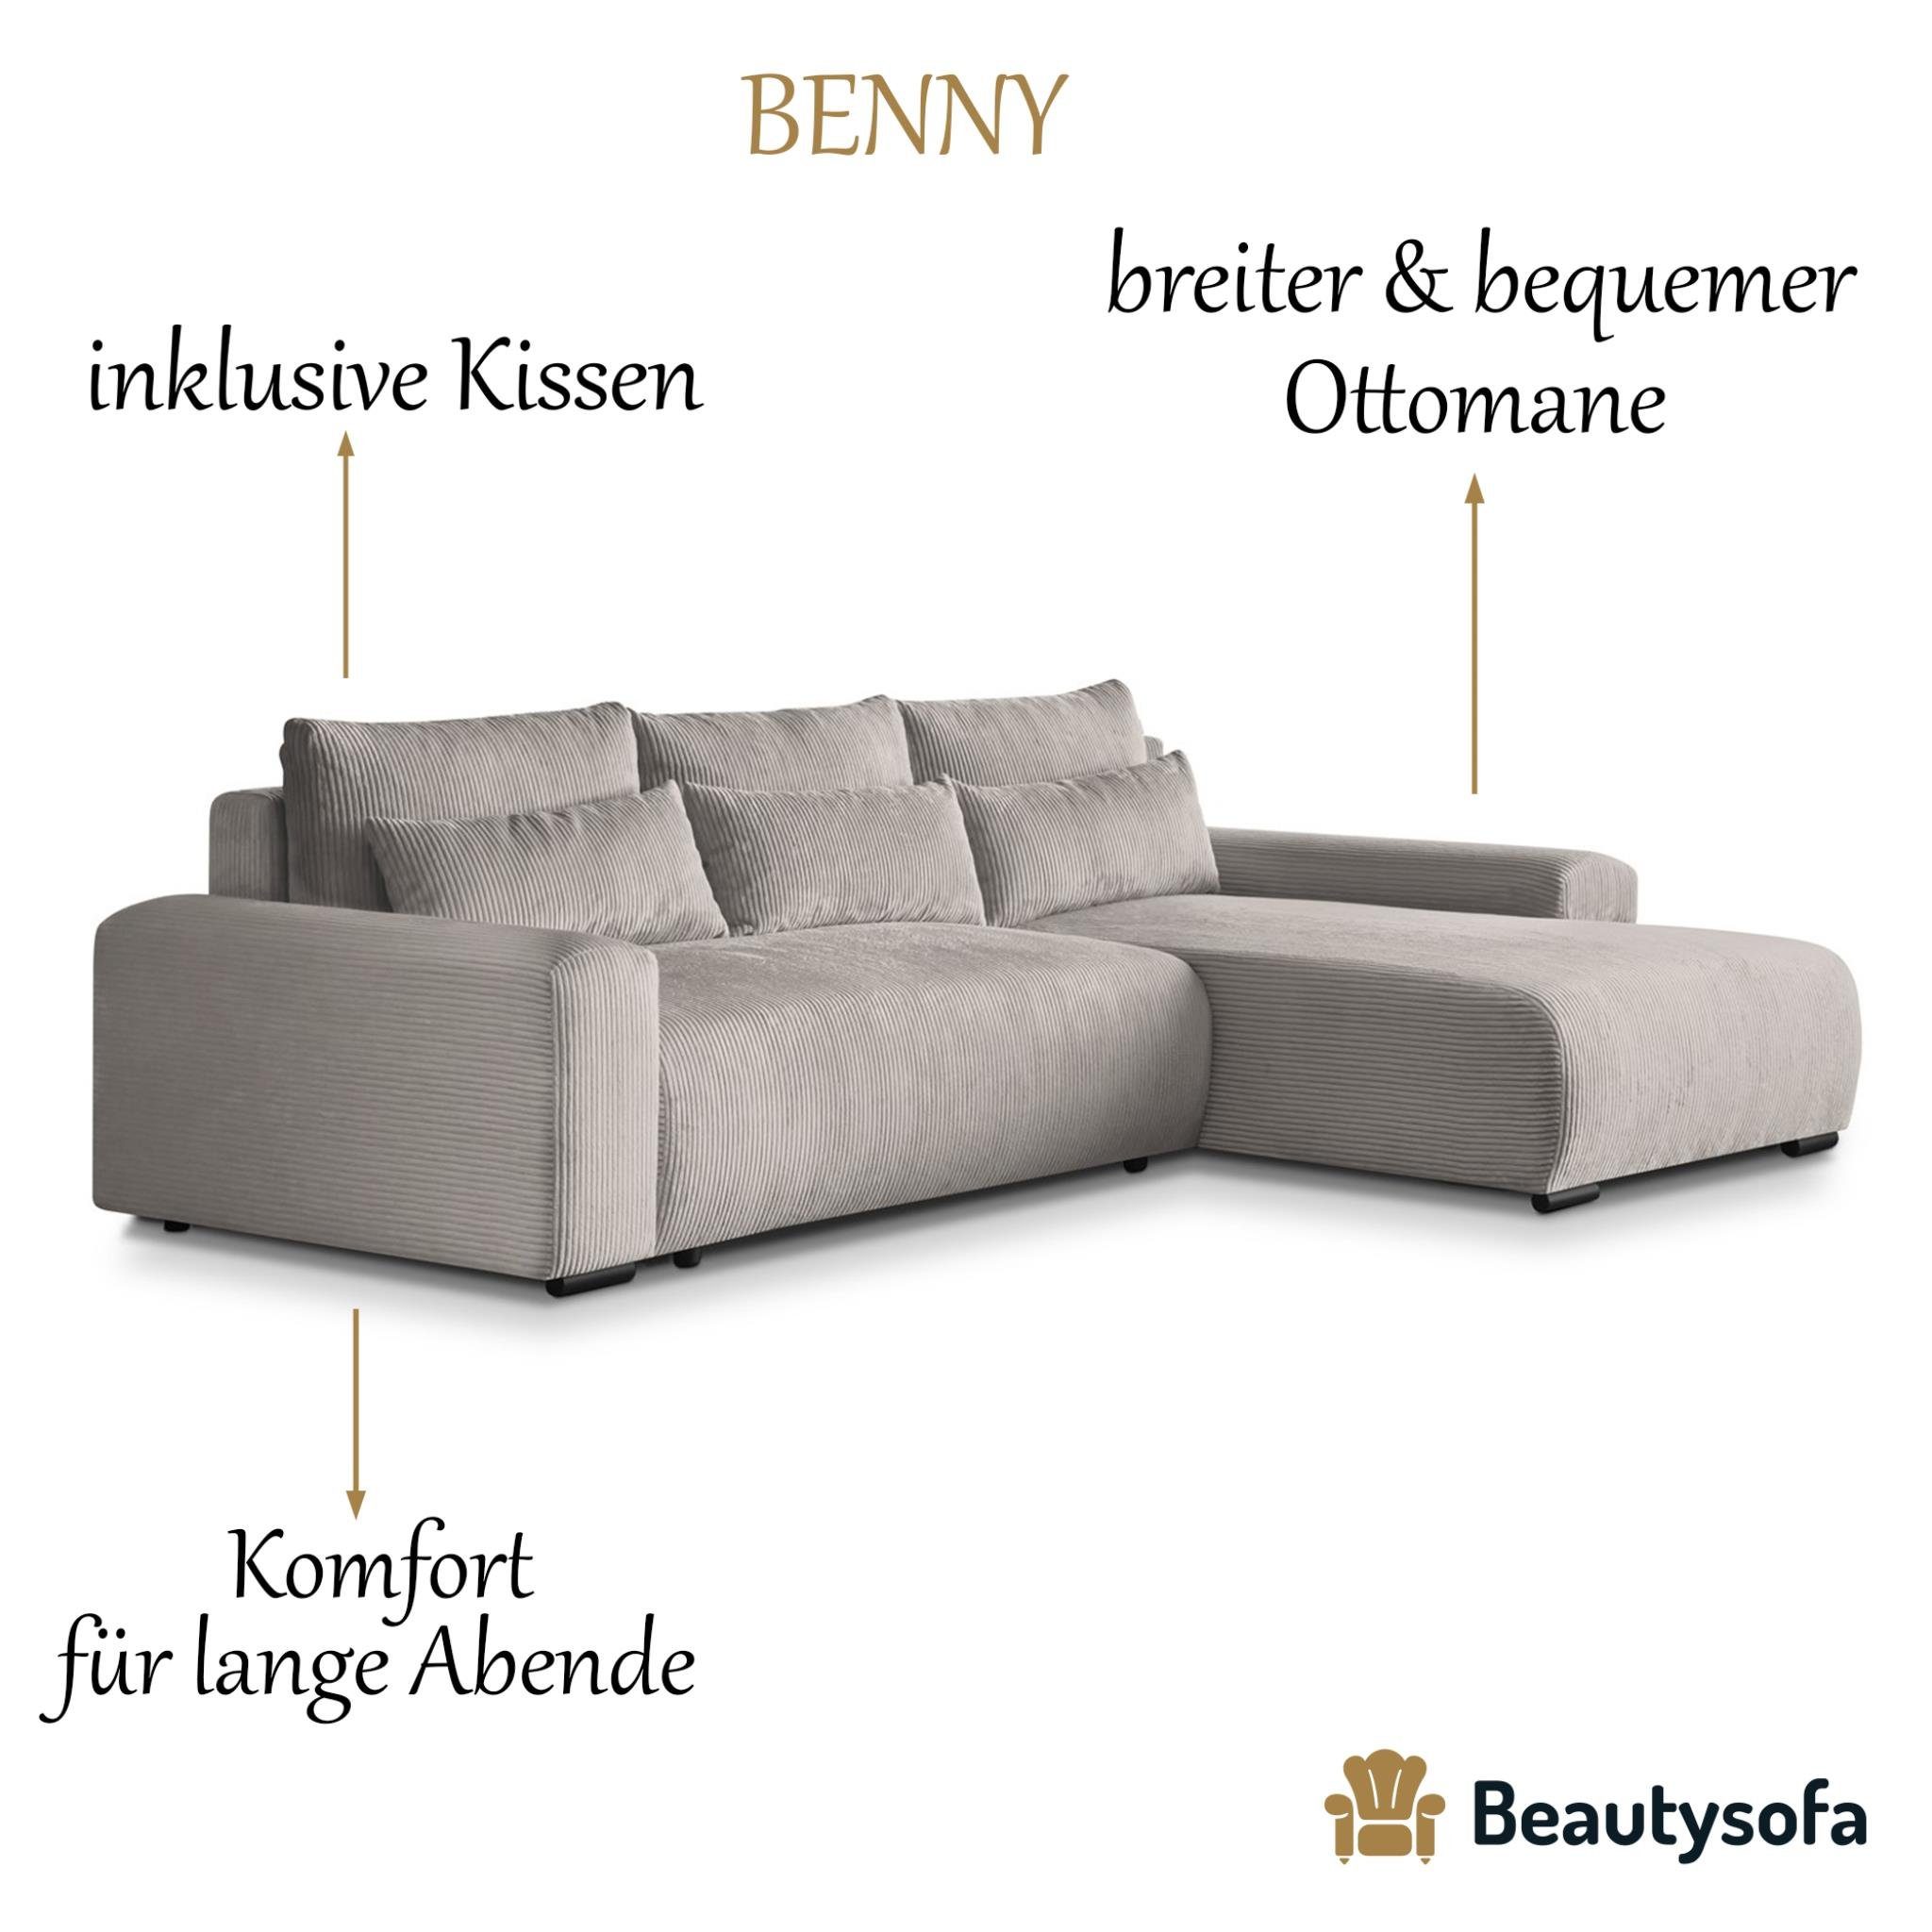 Beautysofa Ecksofa Wellenfedern, Schlaffunktion, Sofa Design, aus stilvoll Benny, Cordstoff im Bettkasten, Polsterecke modernes L-förmiges inkl. Corner